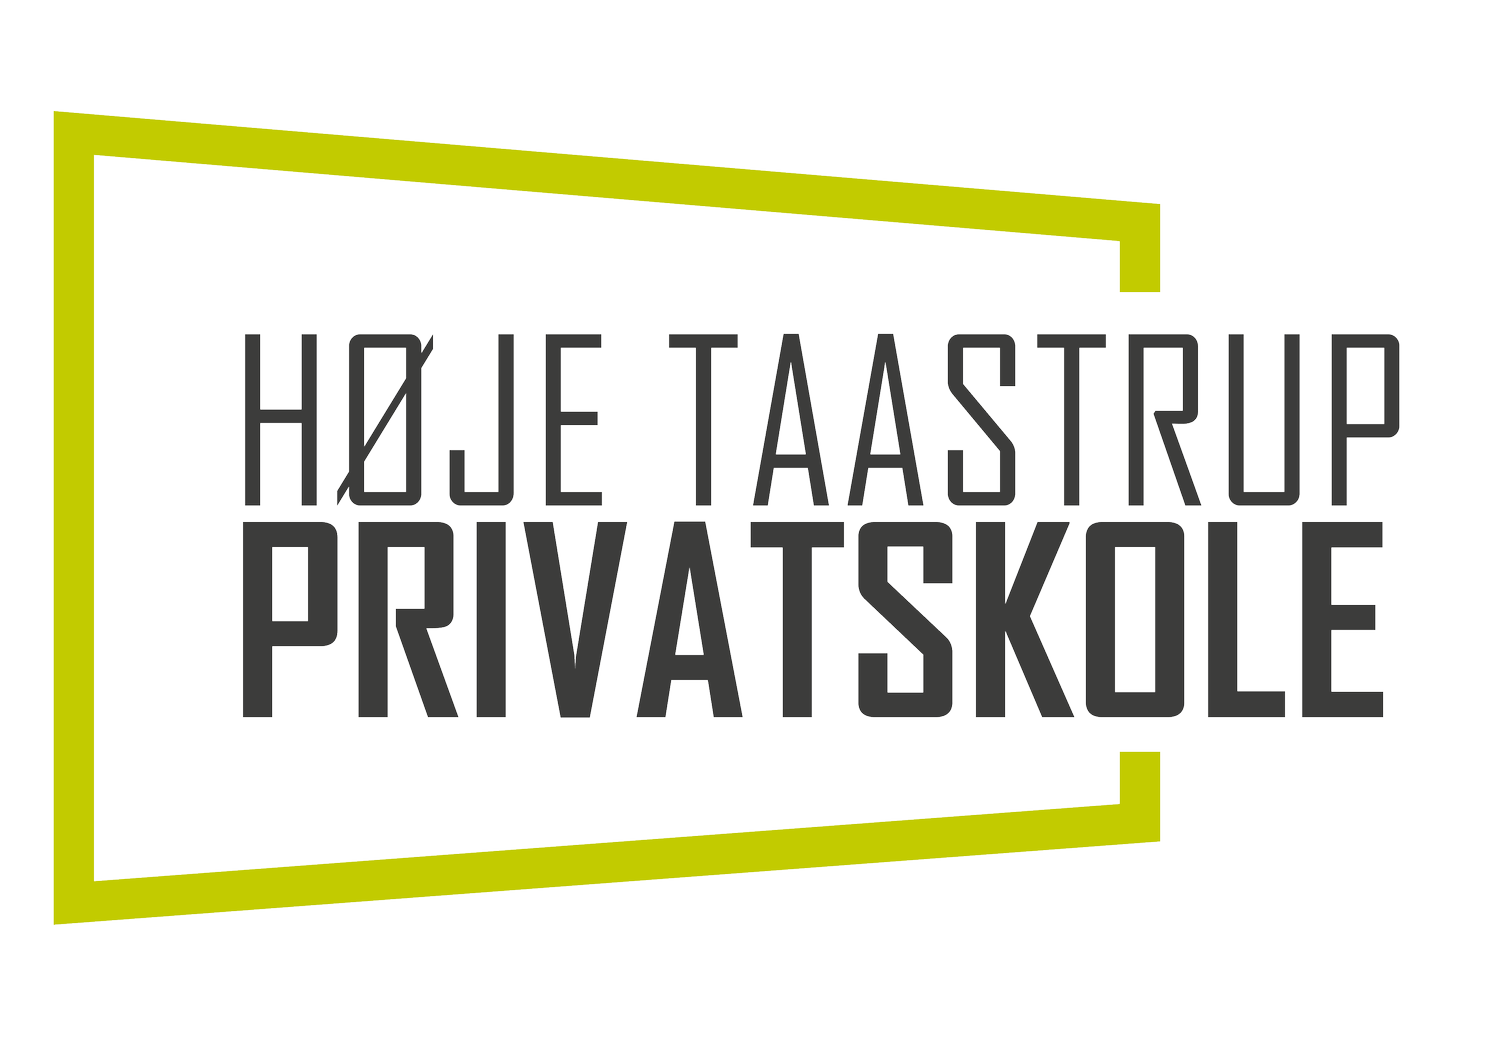 Høje Taastrup Privatskole